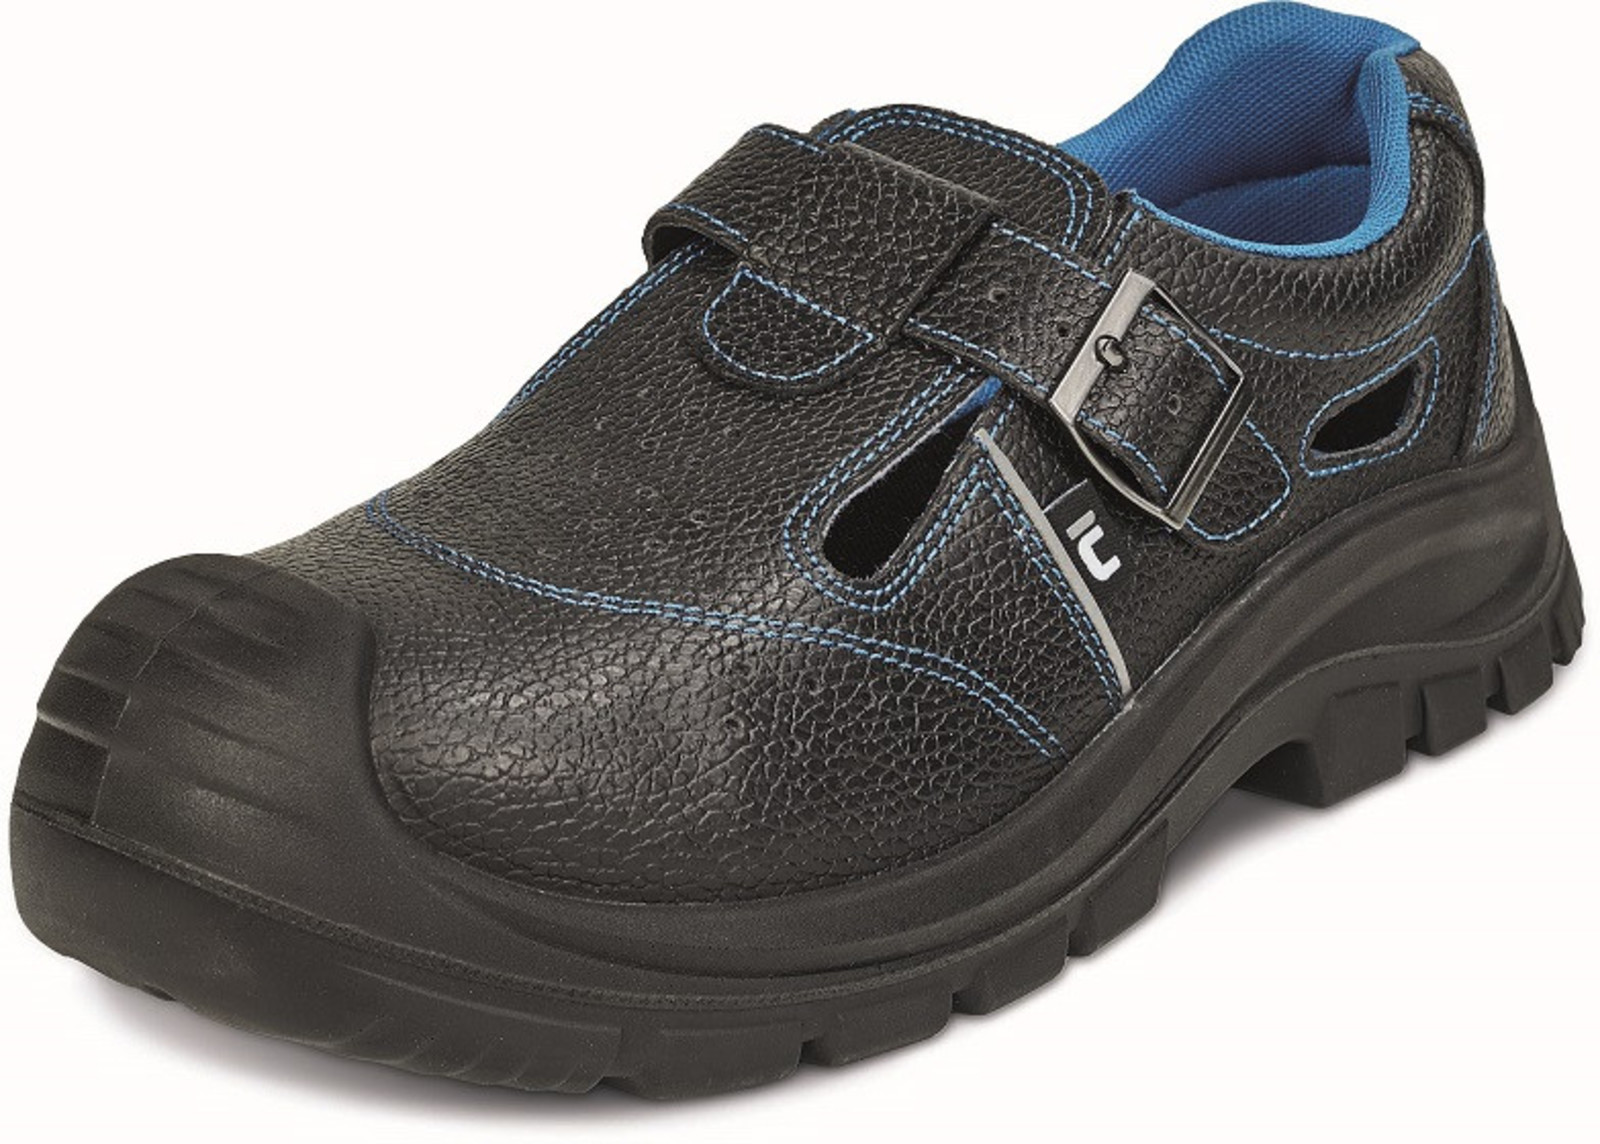 Bezpečnostné sandále Raven XT S1P - veľkosť: 43, farba: čierna